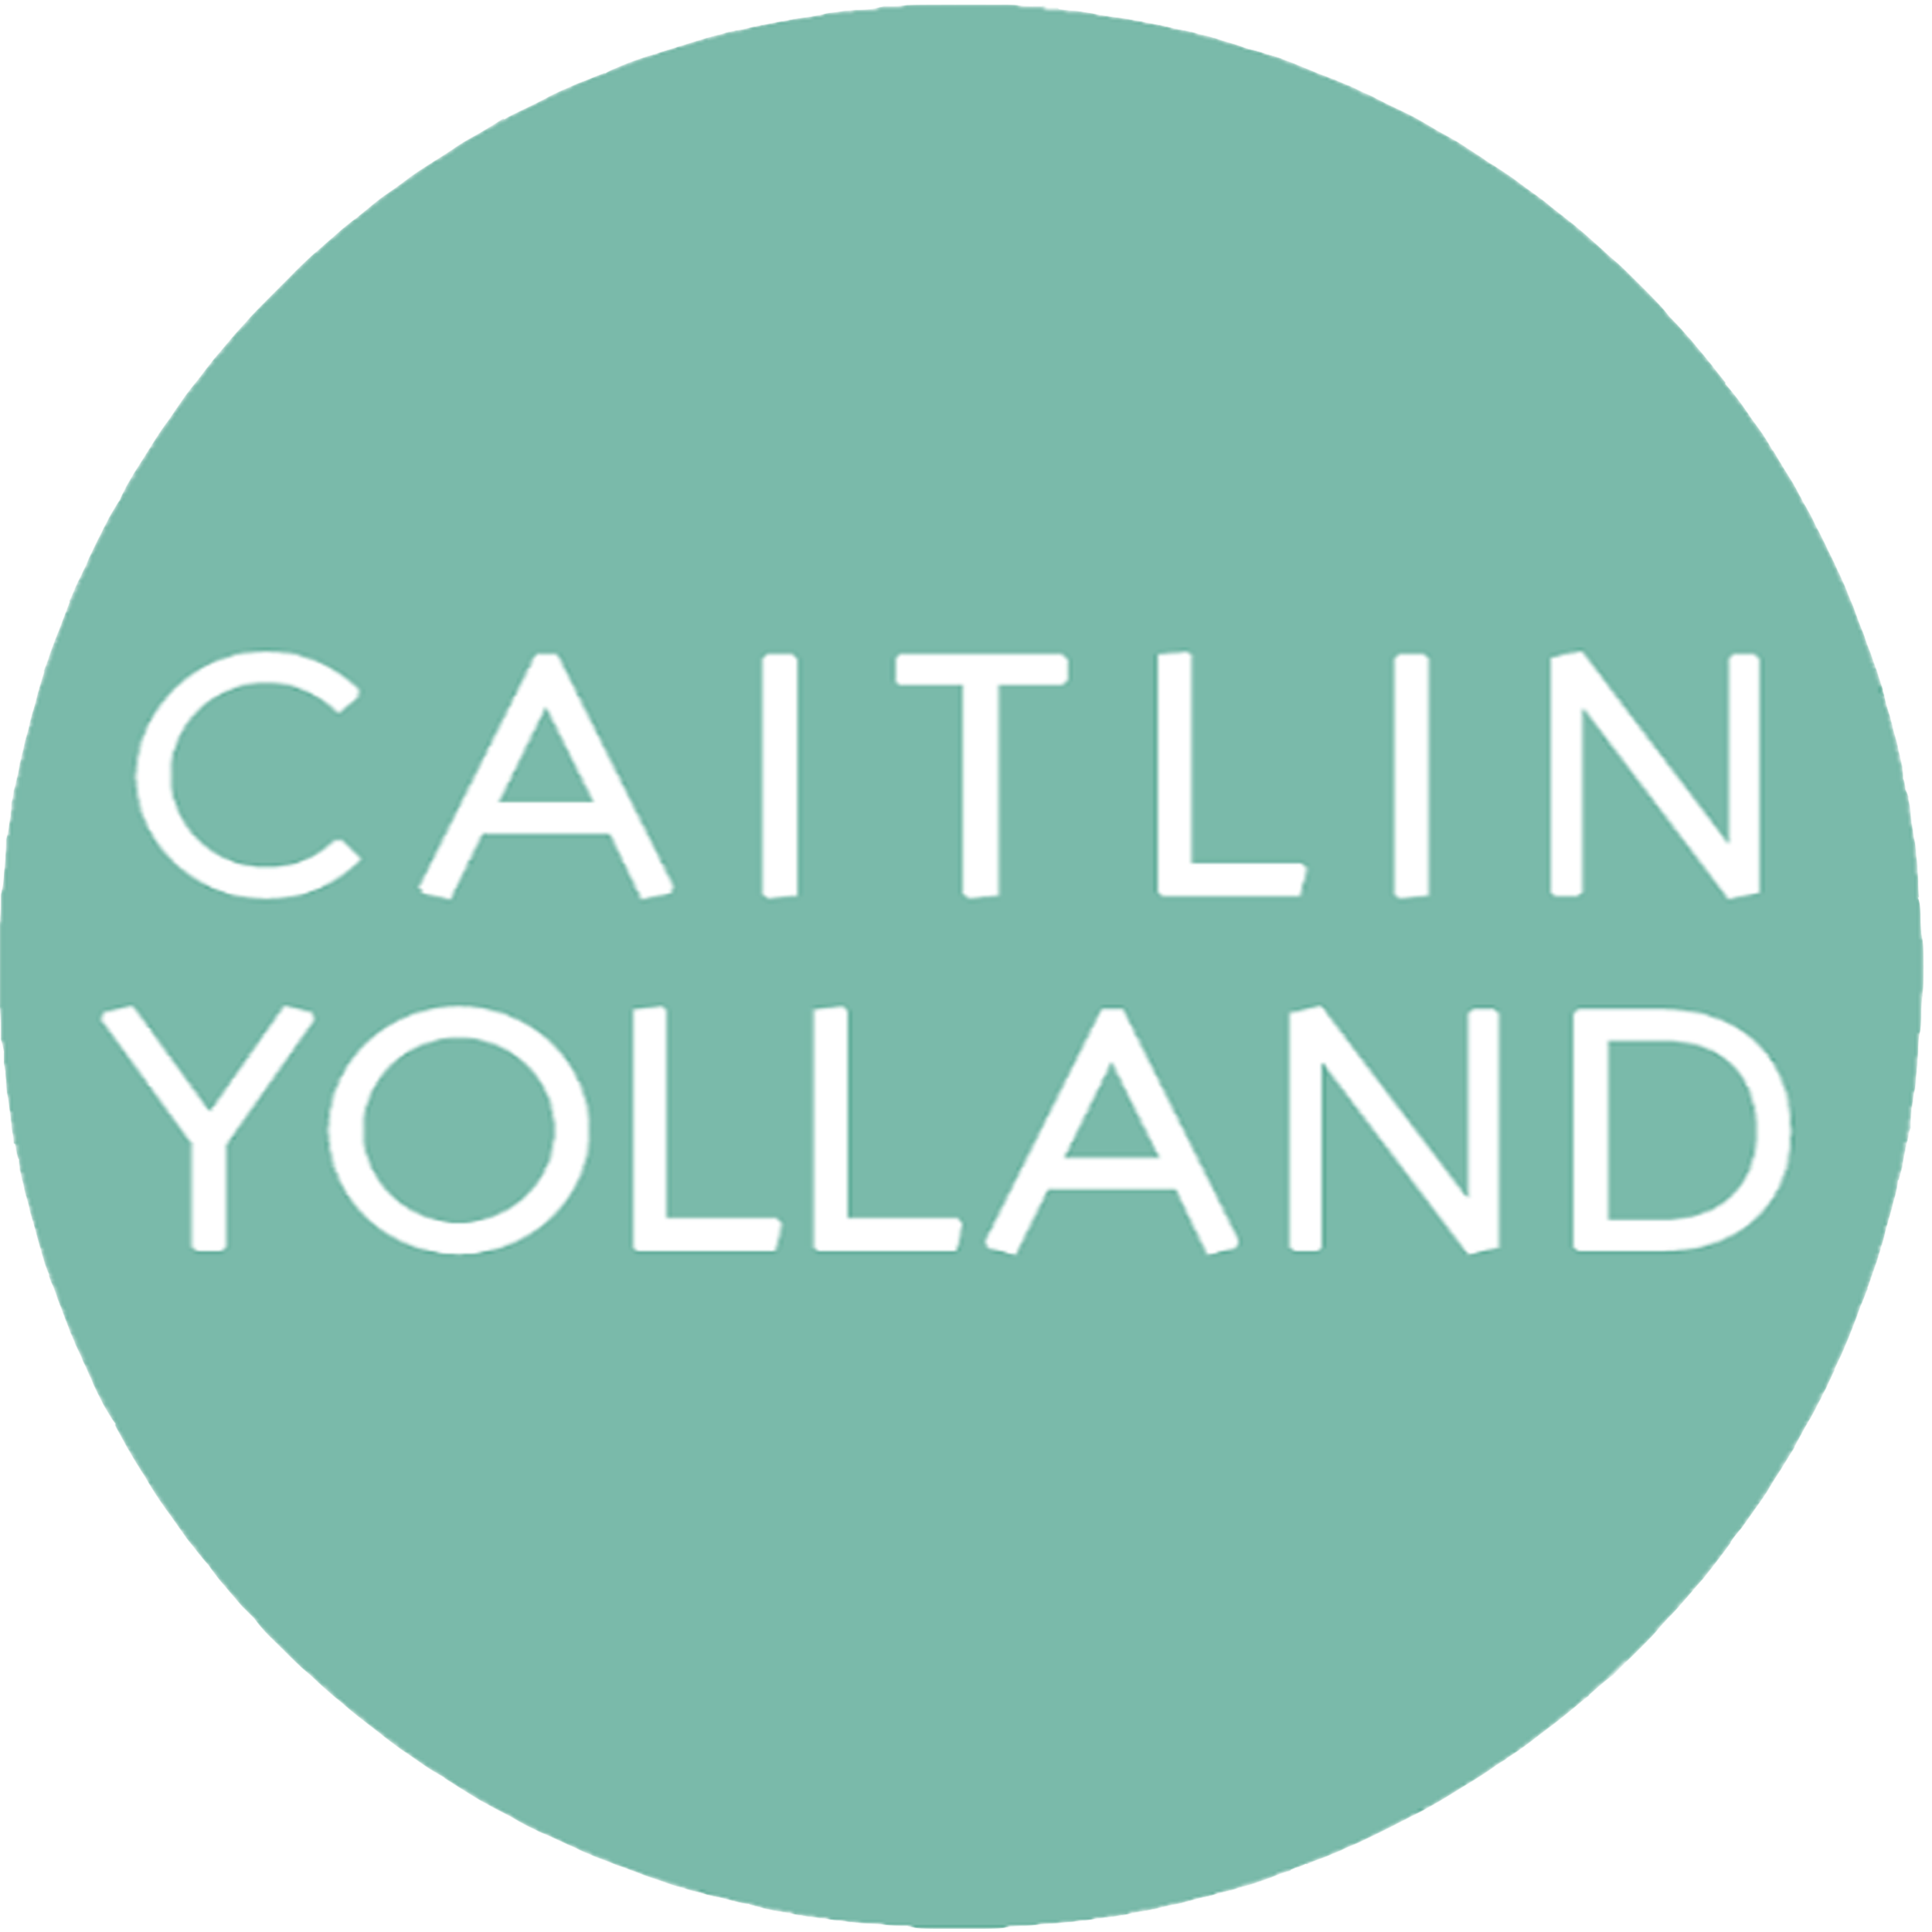 CAITLIN YOLLAND